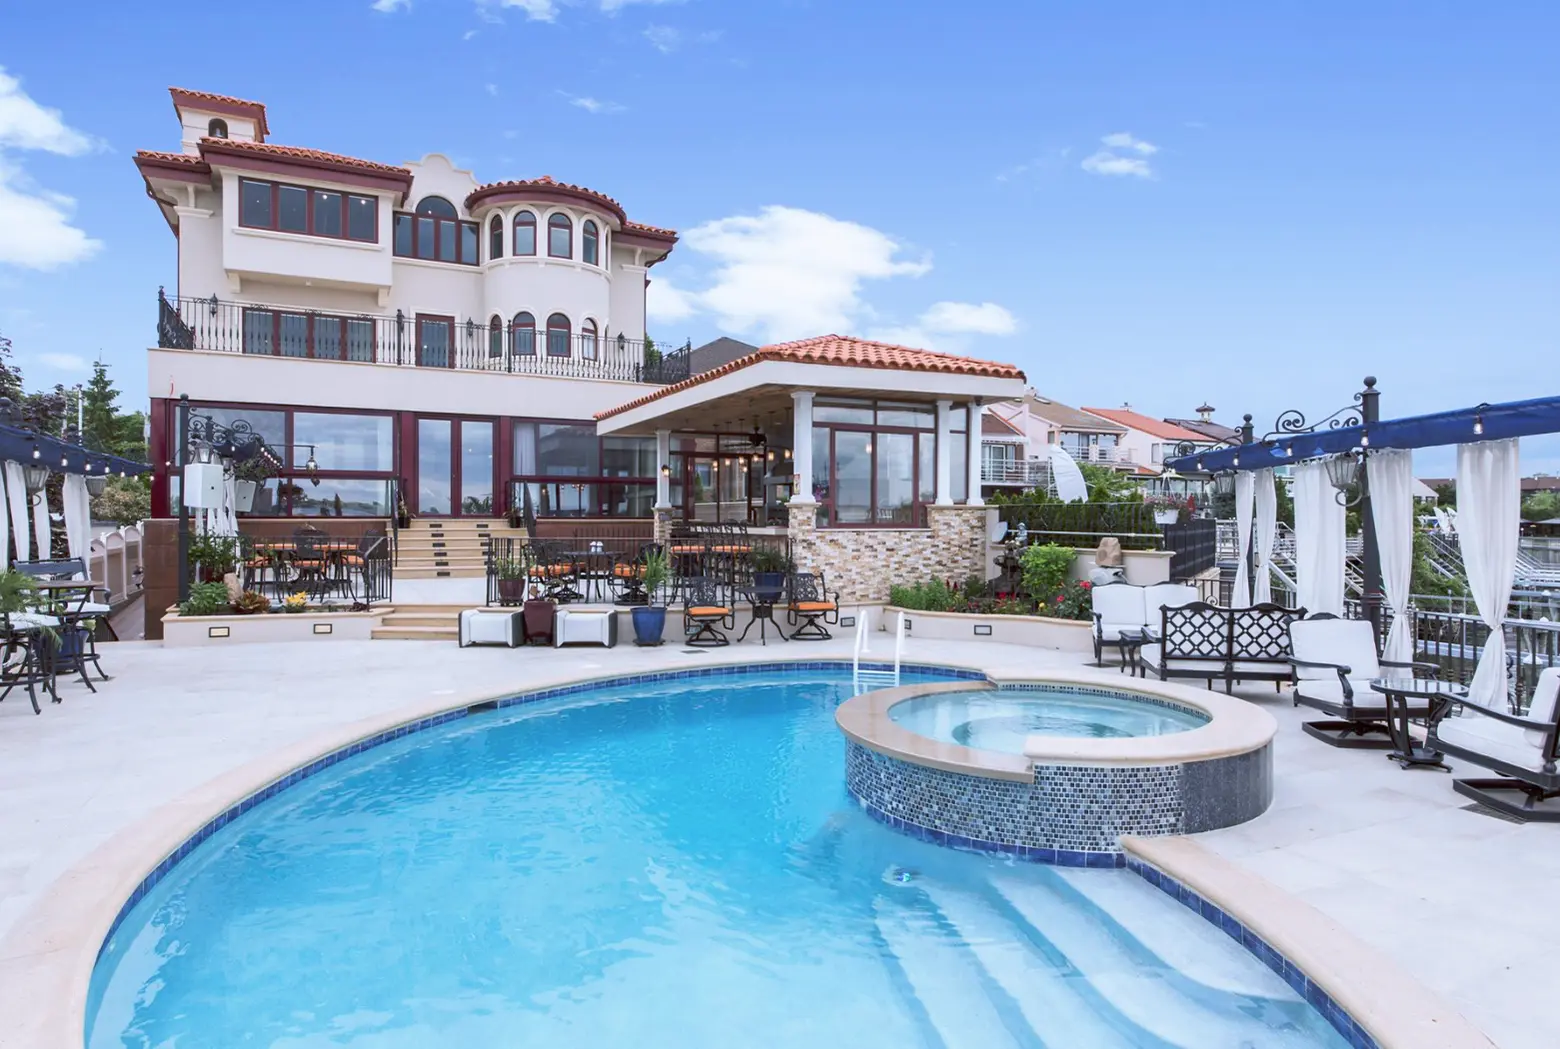 $8M mansion is a ‘waterfront Mediterranean villa’ in Queens